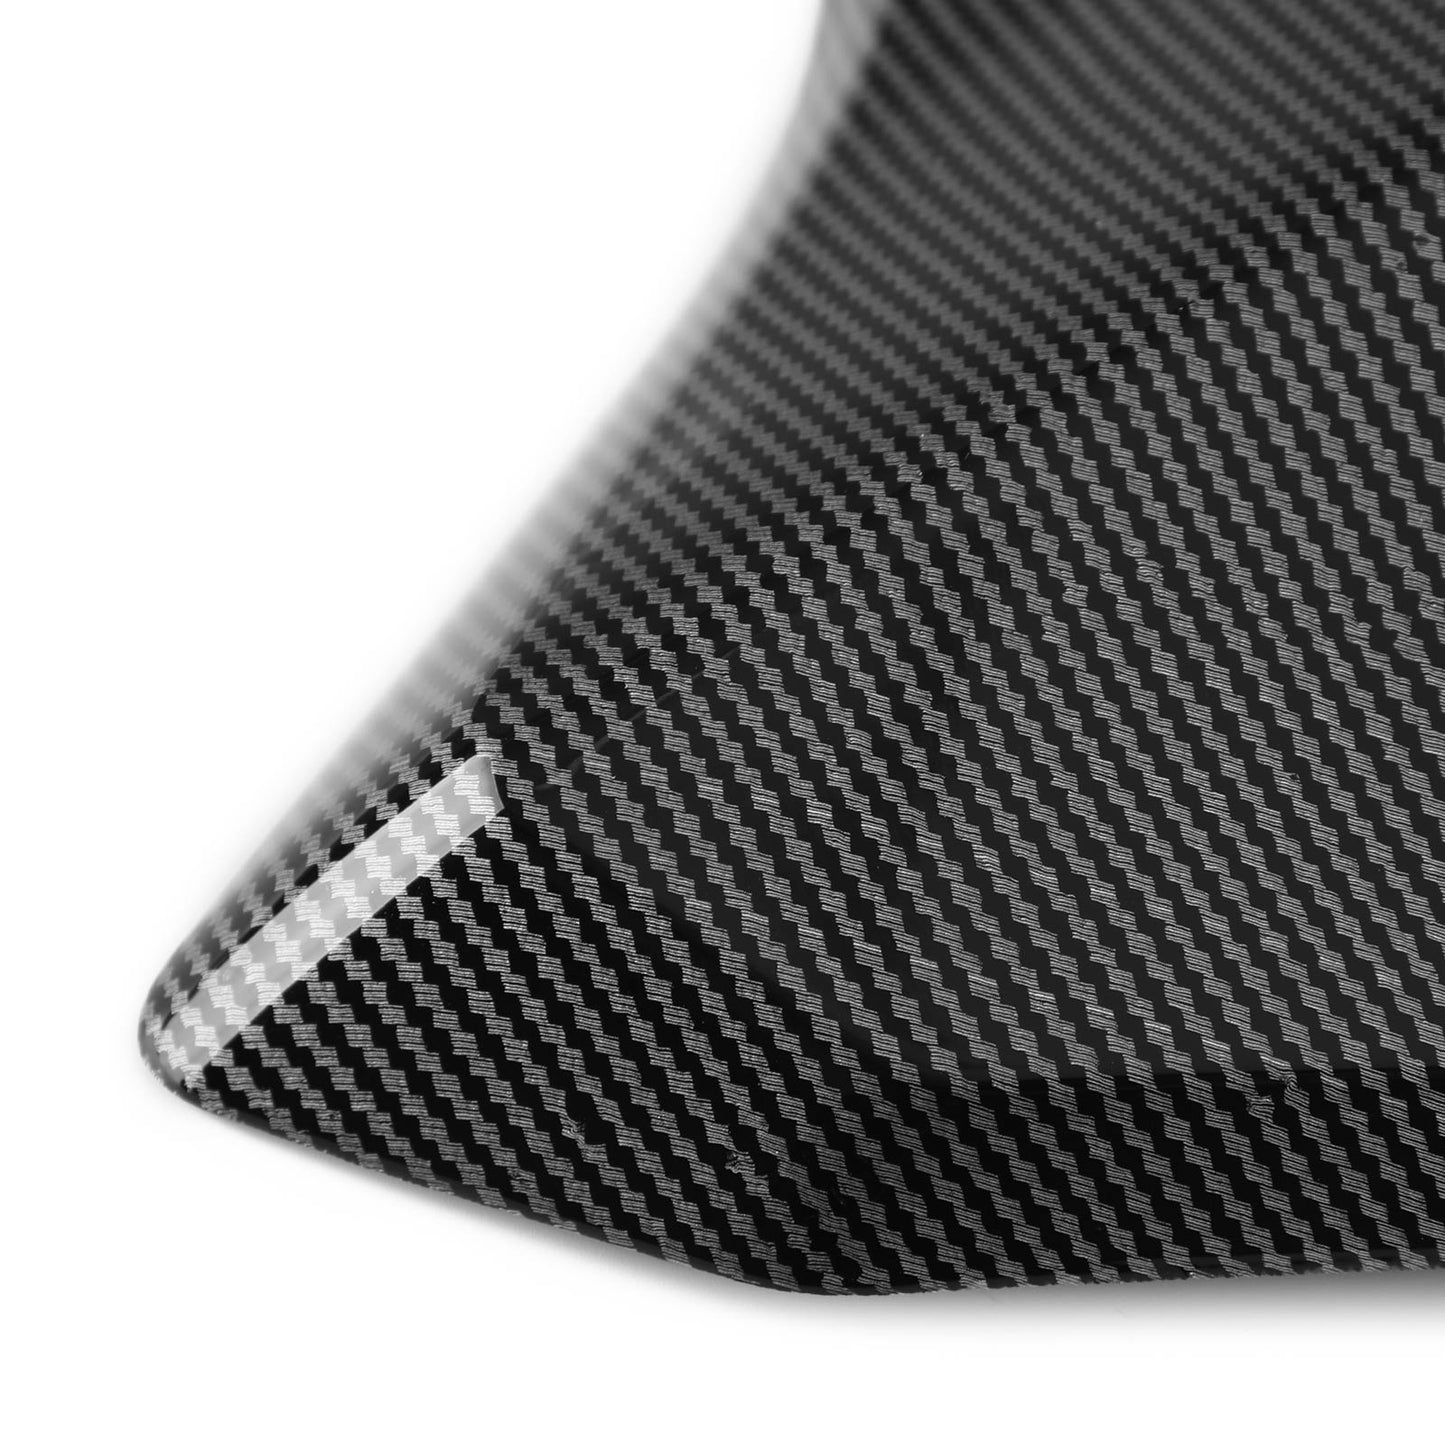 Radiator Side Cover Fairing Panels for YAMAHA tracer 900 GT 2018-2020 Black